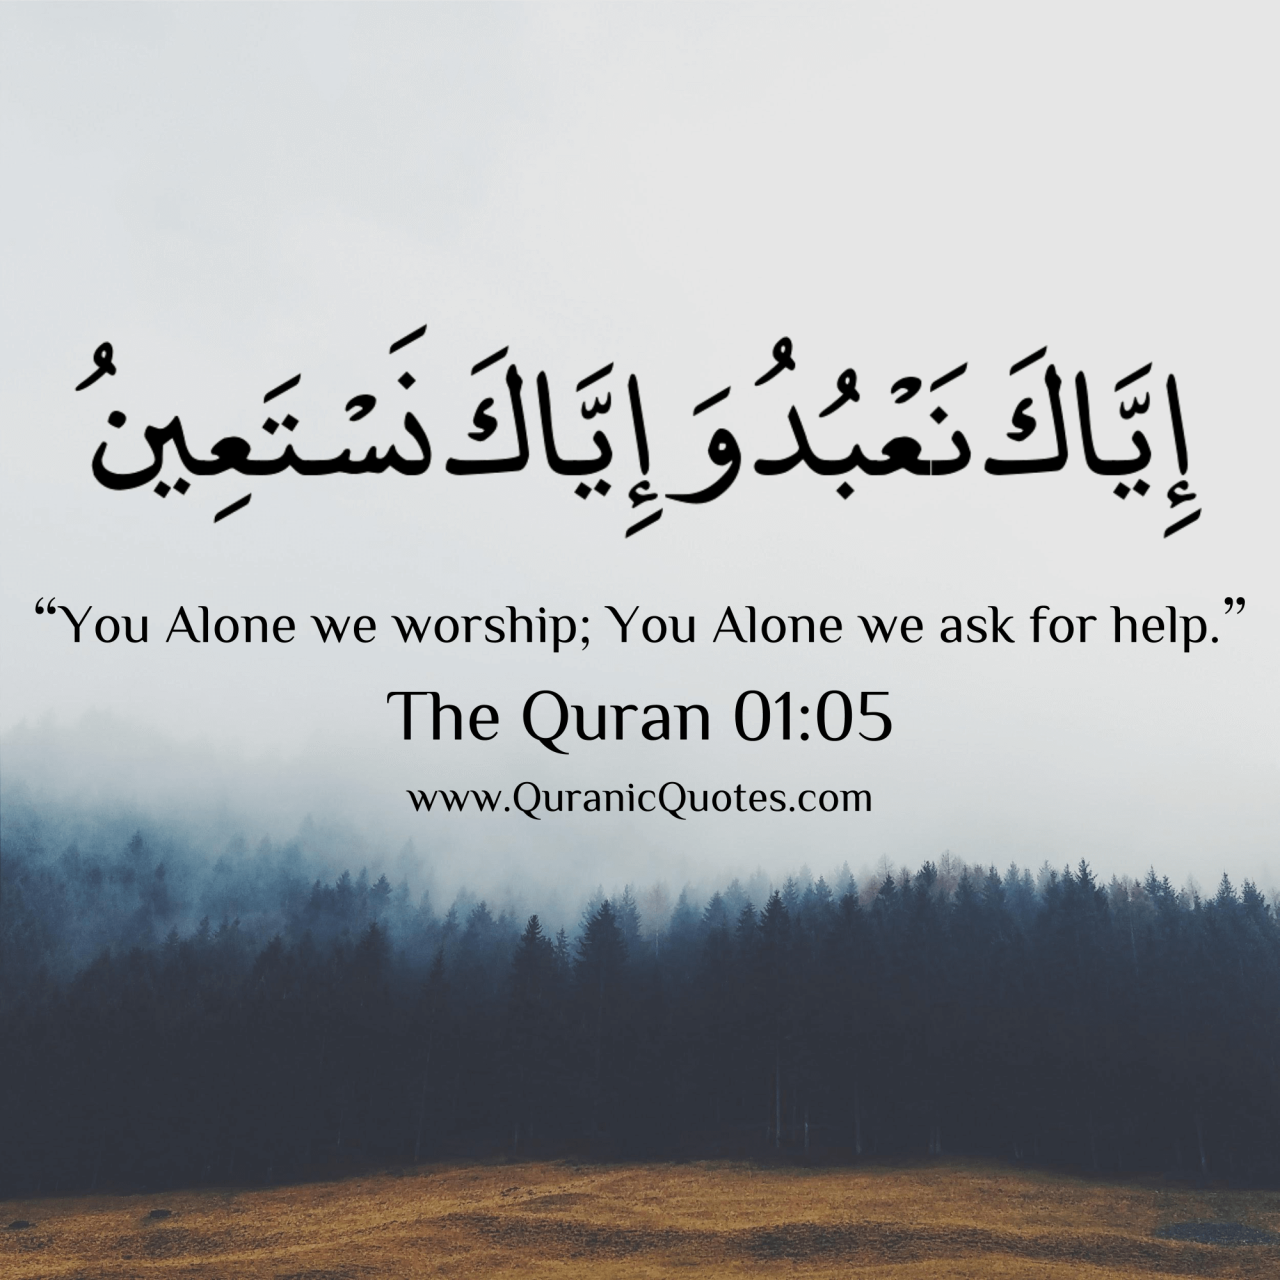 Quranic Quotes - #150 The Quran 01:05 (Surah al-Fatiha) “You Alone...